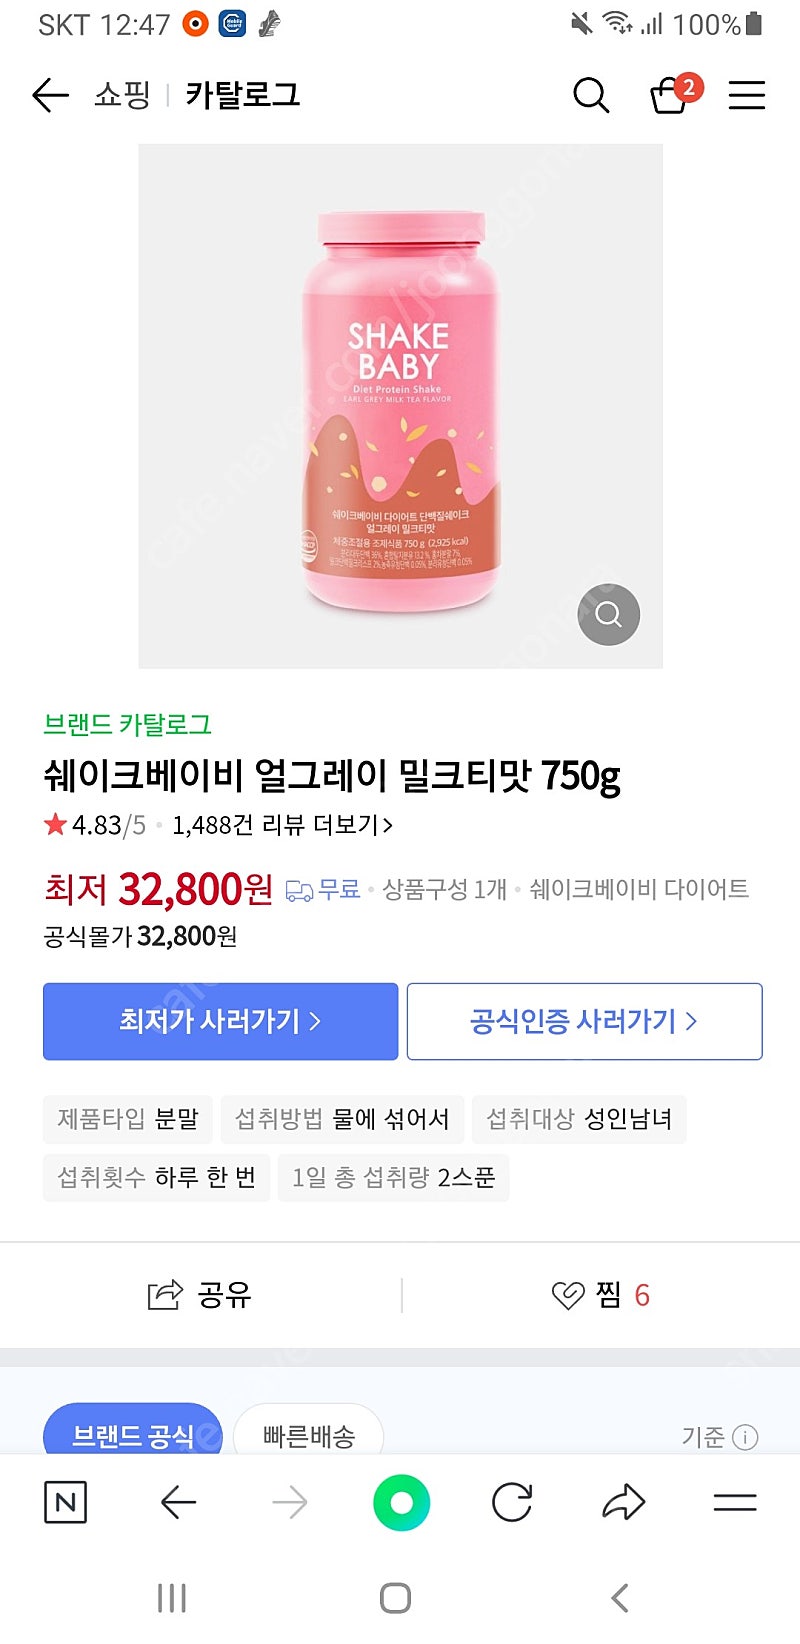 쉐이크베이비 얼그레이맛 새상품 반값택포함 2만원